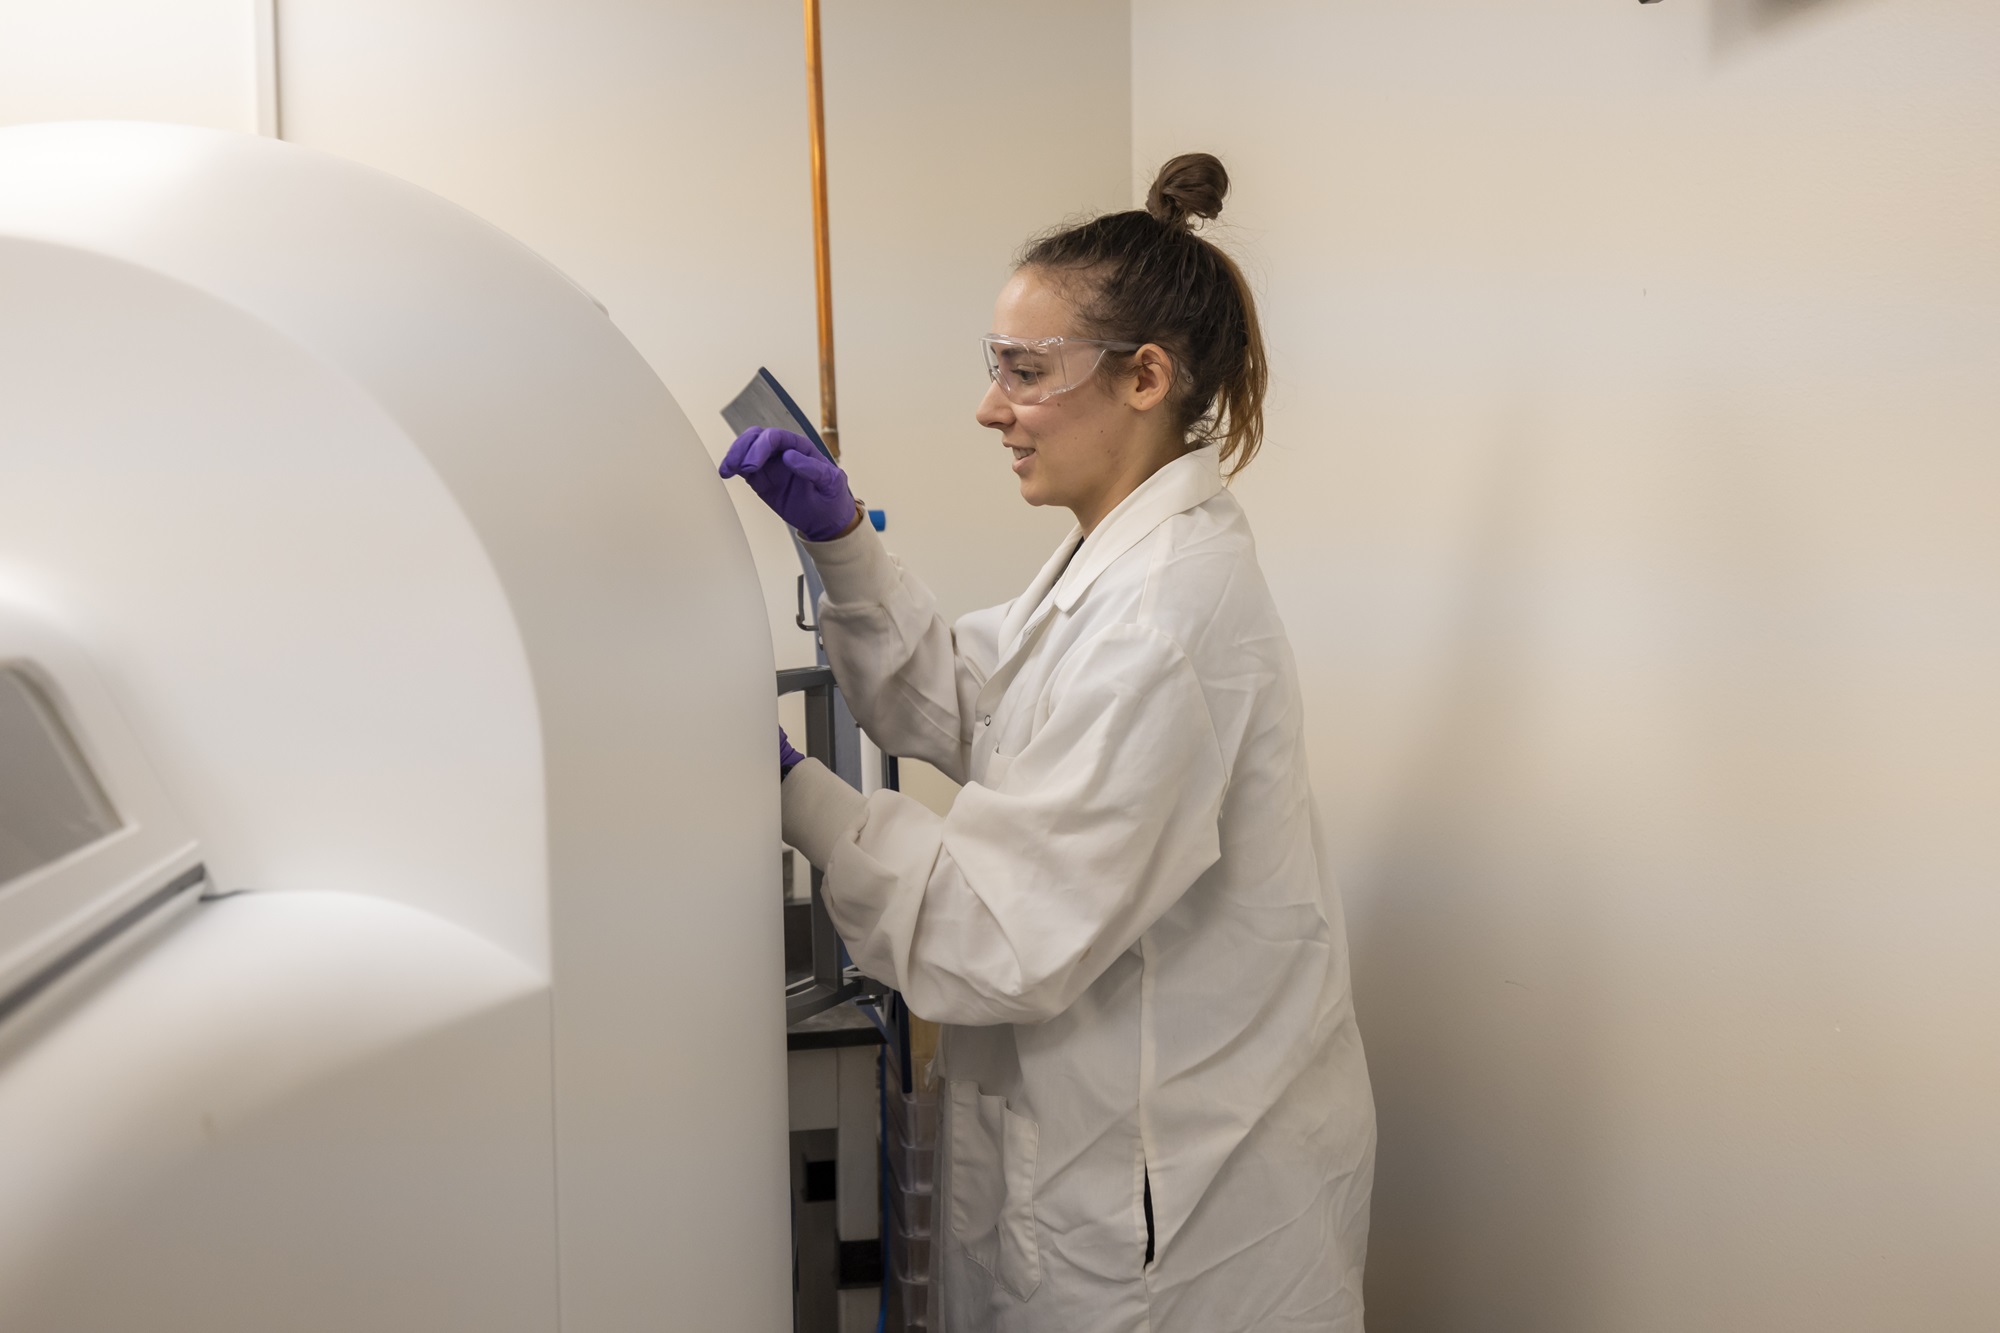 researcher loads a sample into a machine